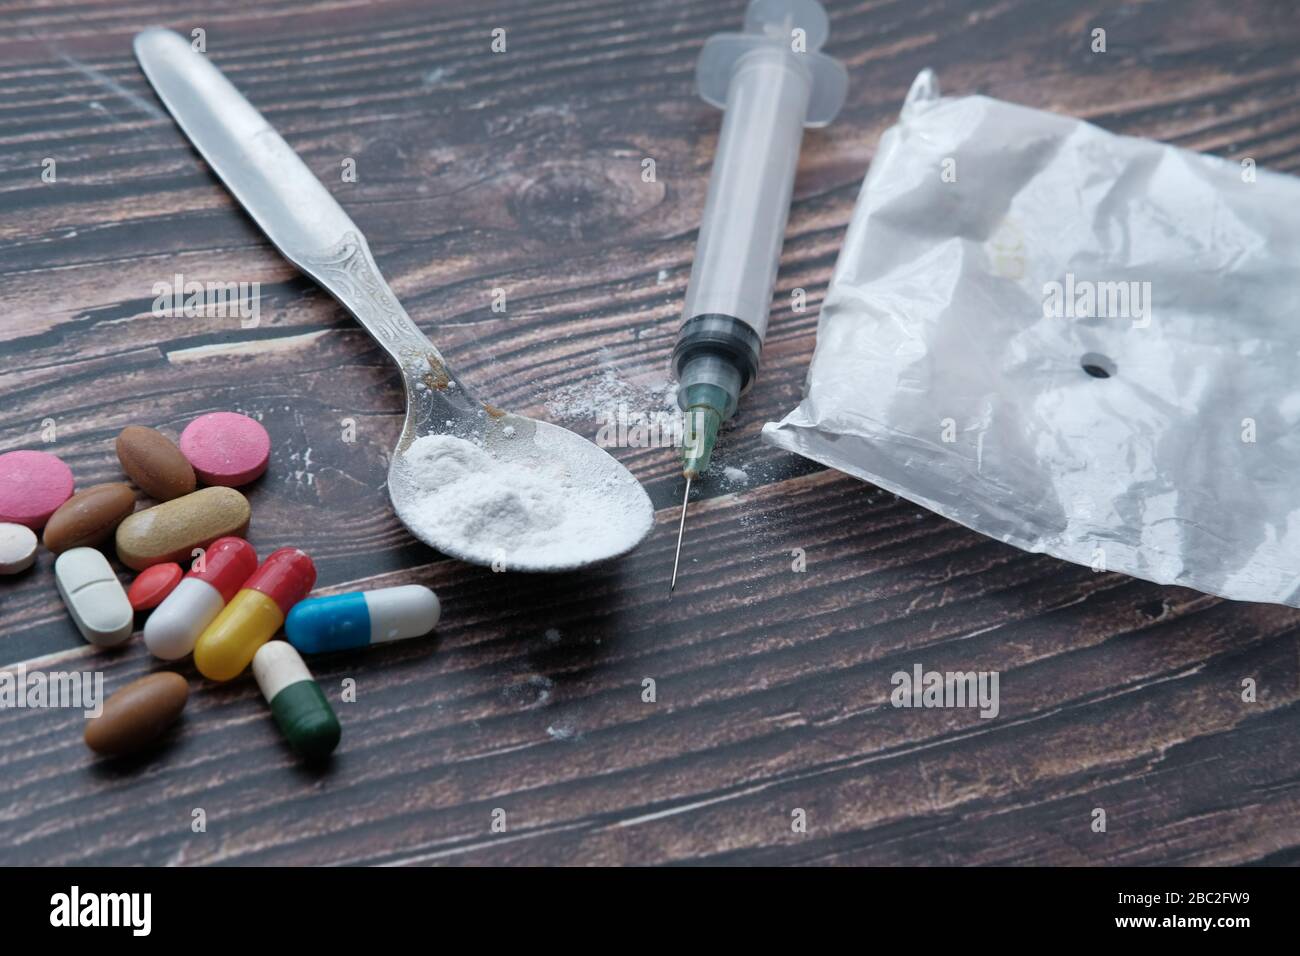 Seringue de drogue et héroïne cuite sur la cuillère, vue de dessus Banque D'Images